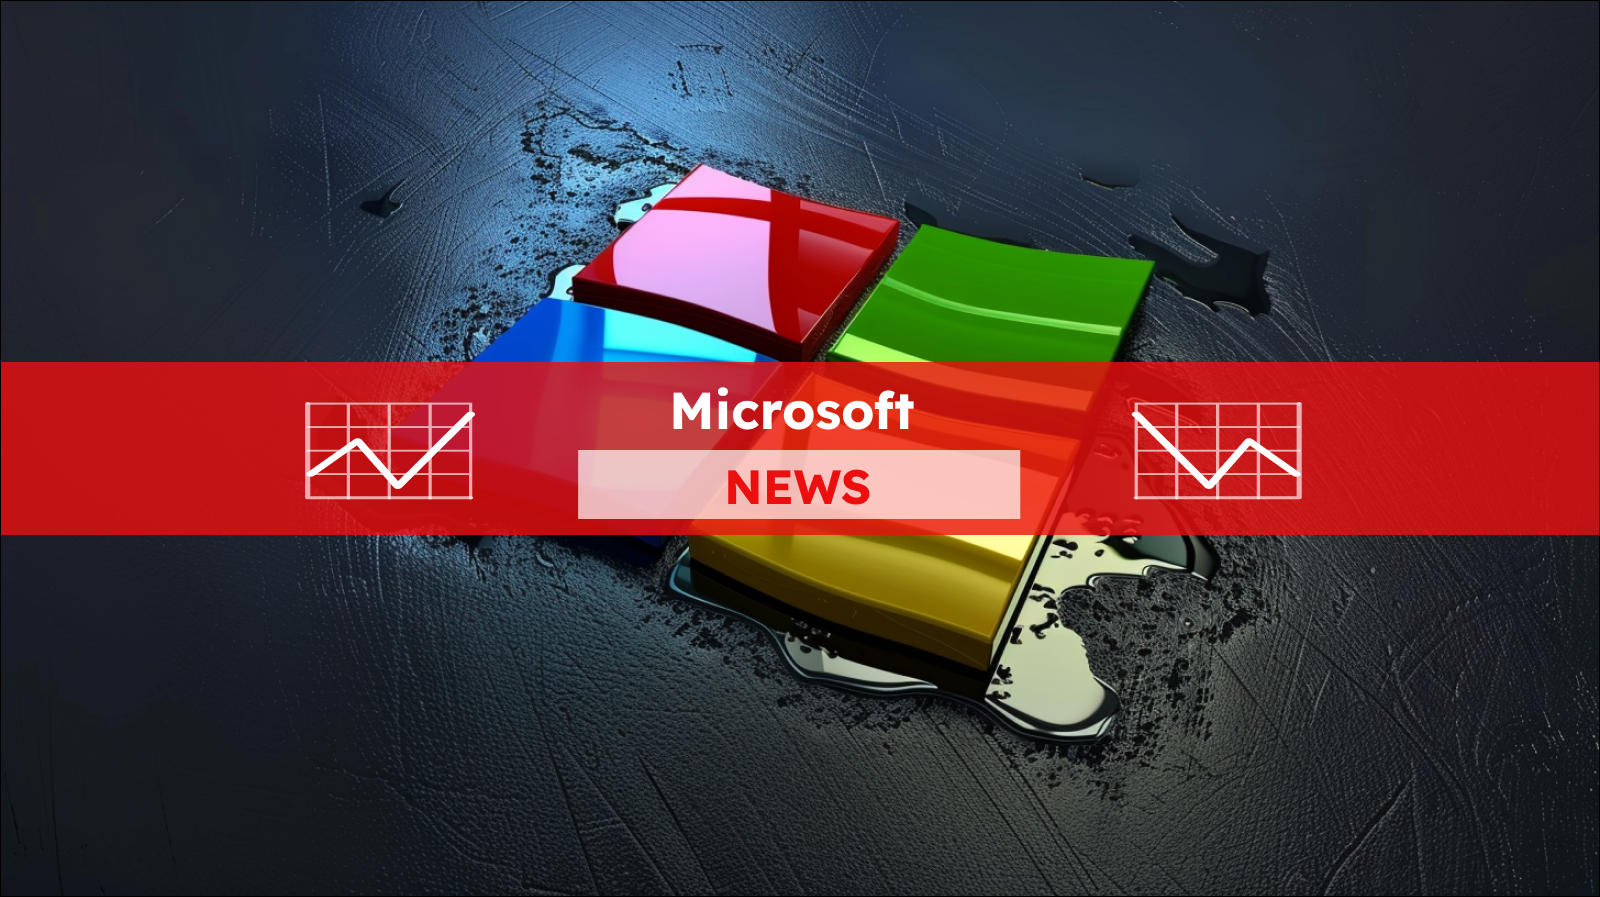 Logo in leuchtenden Farben, das auf einer dunklen Oberfläche, mit einem Microsoft NEWS Banner